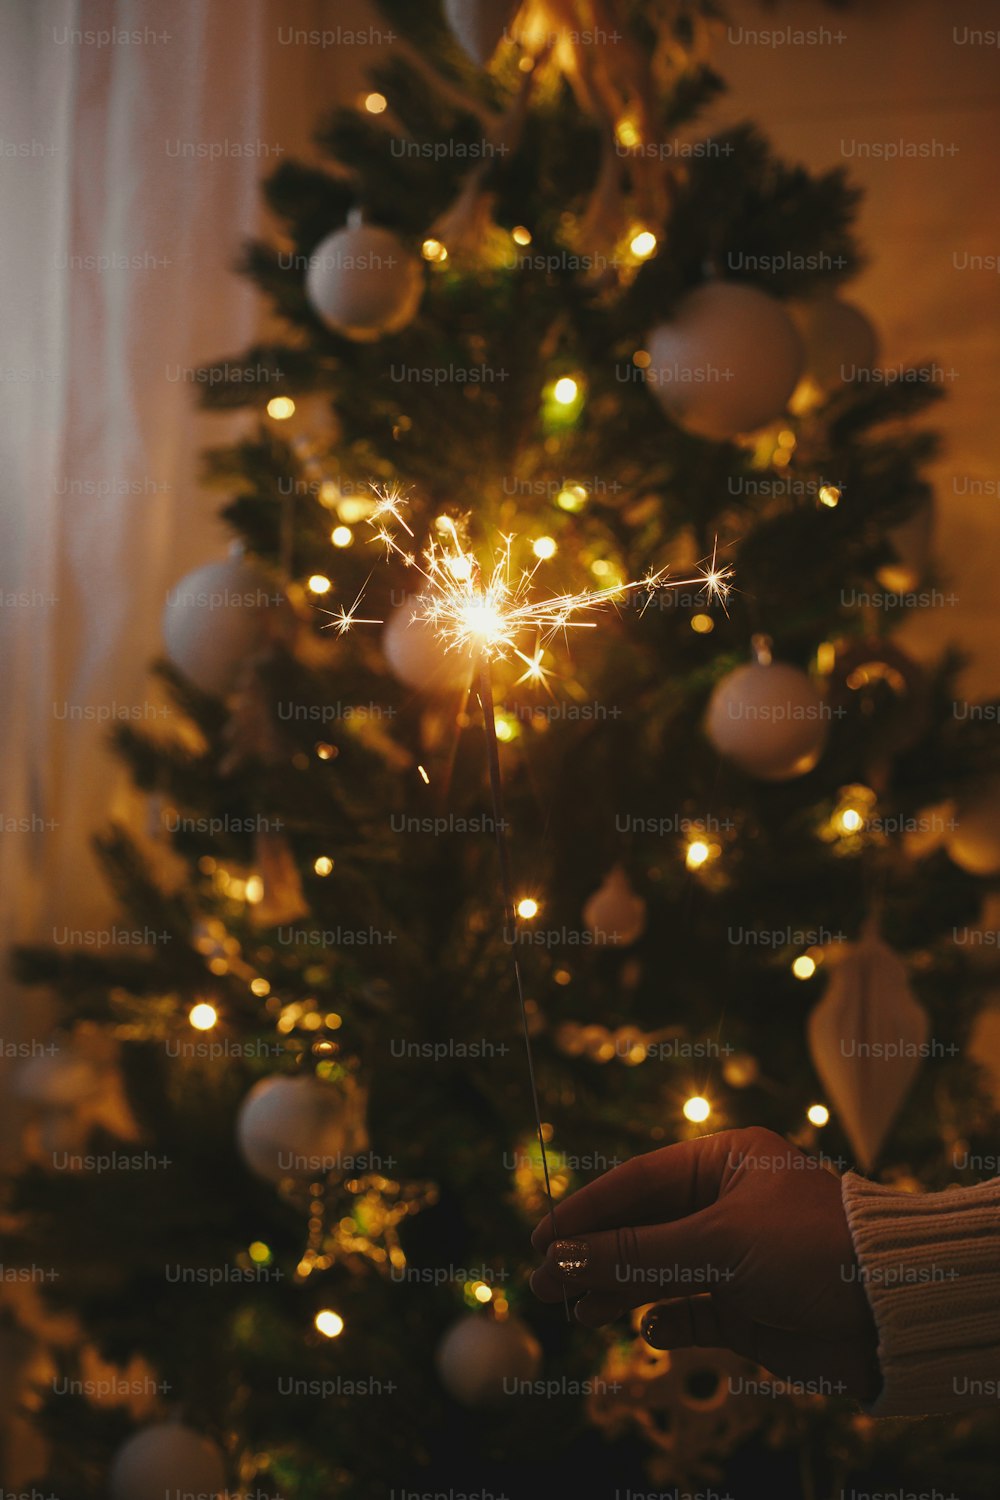 Mano che tiene una scintilla accesa sullo sfondo delle luci dell'albero di Natale nella stanza buia festiva. Felice Anno Nuovo! Fuochi d'artificio bengala che brillano nella mano della donna. Spazio per il testo. Momento atmosferico